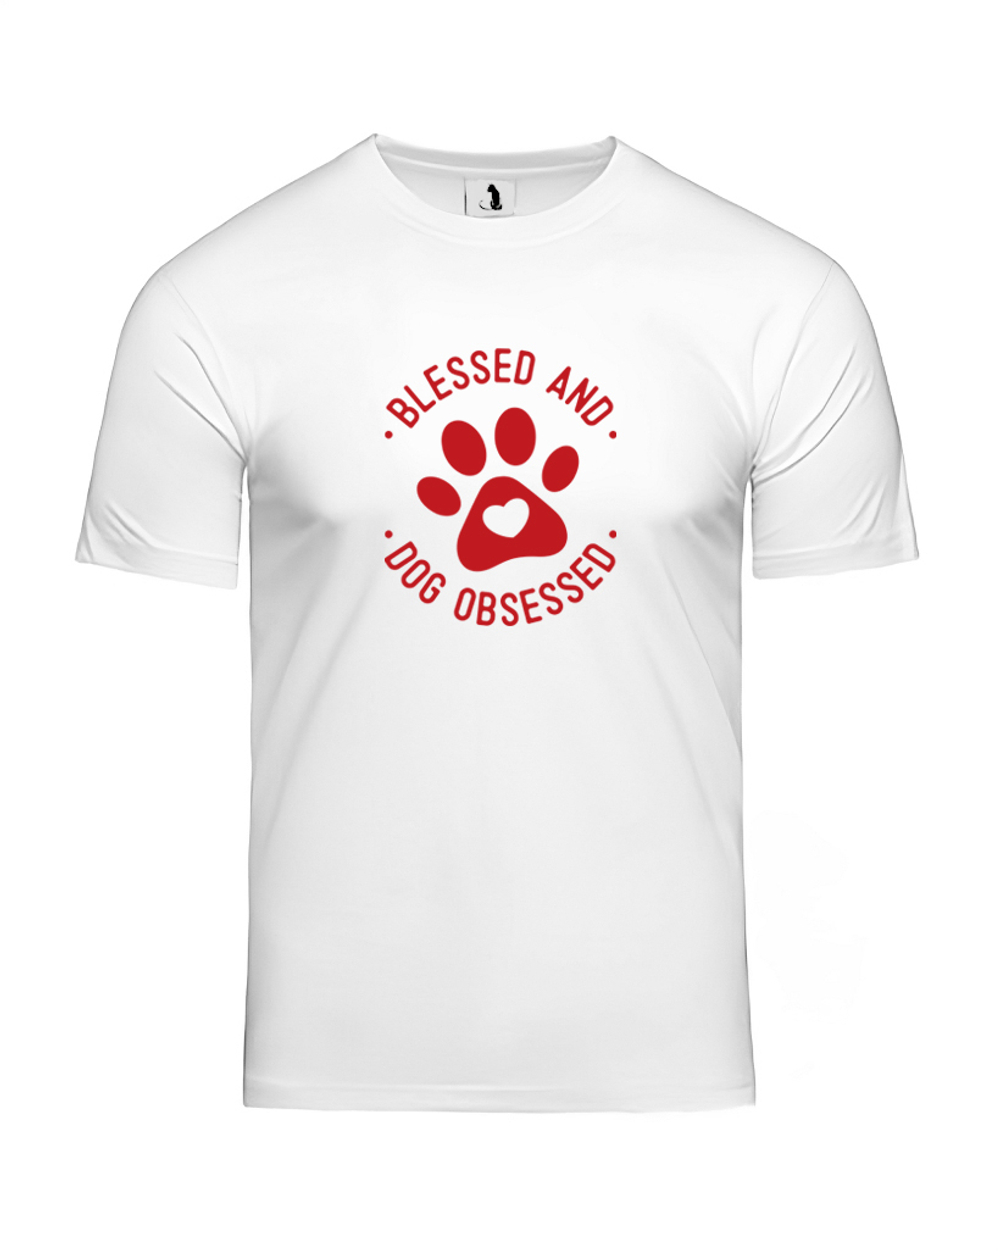 Футболка Blessed and dog obsessed unisex белая с красным рисунком